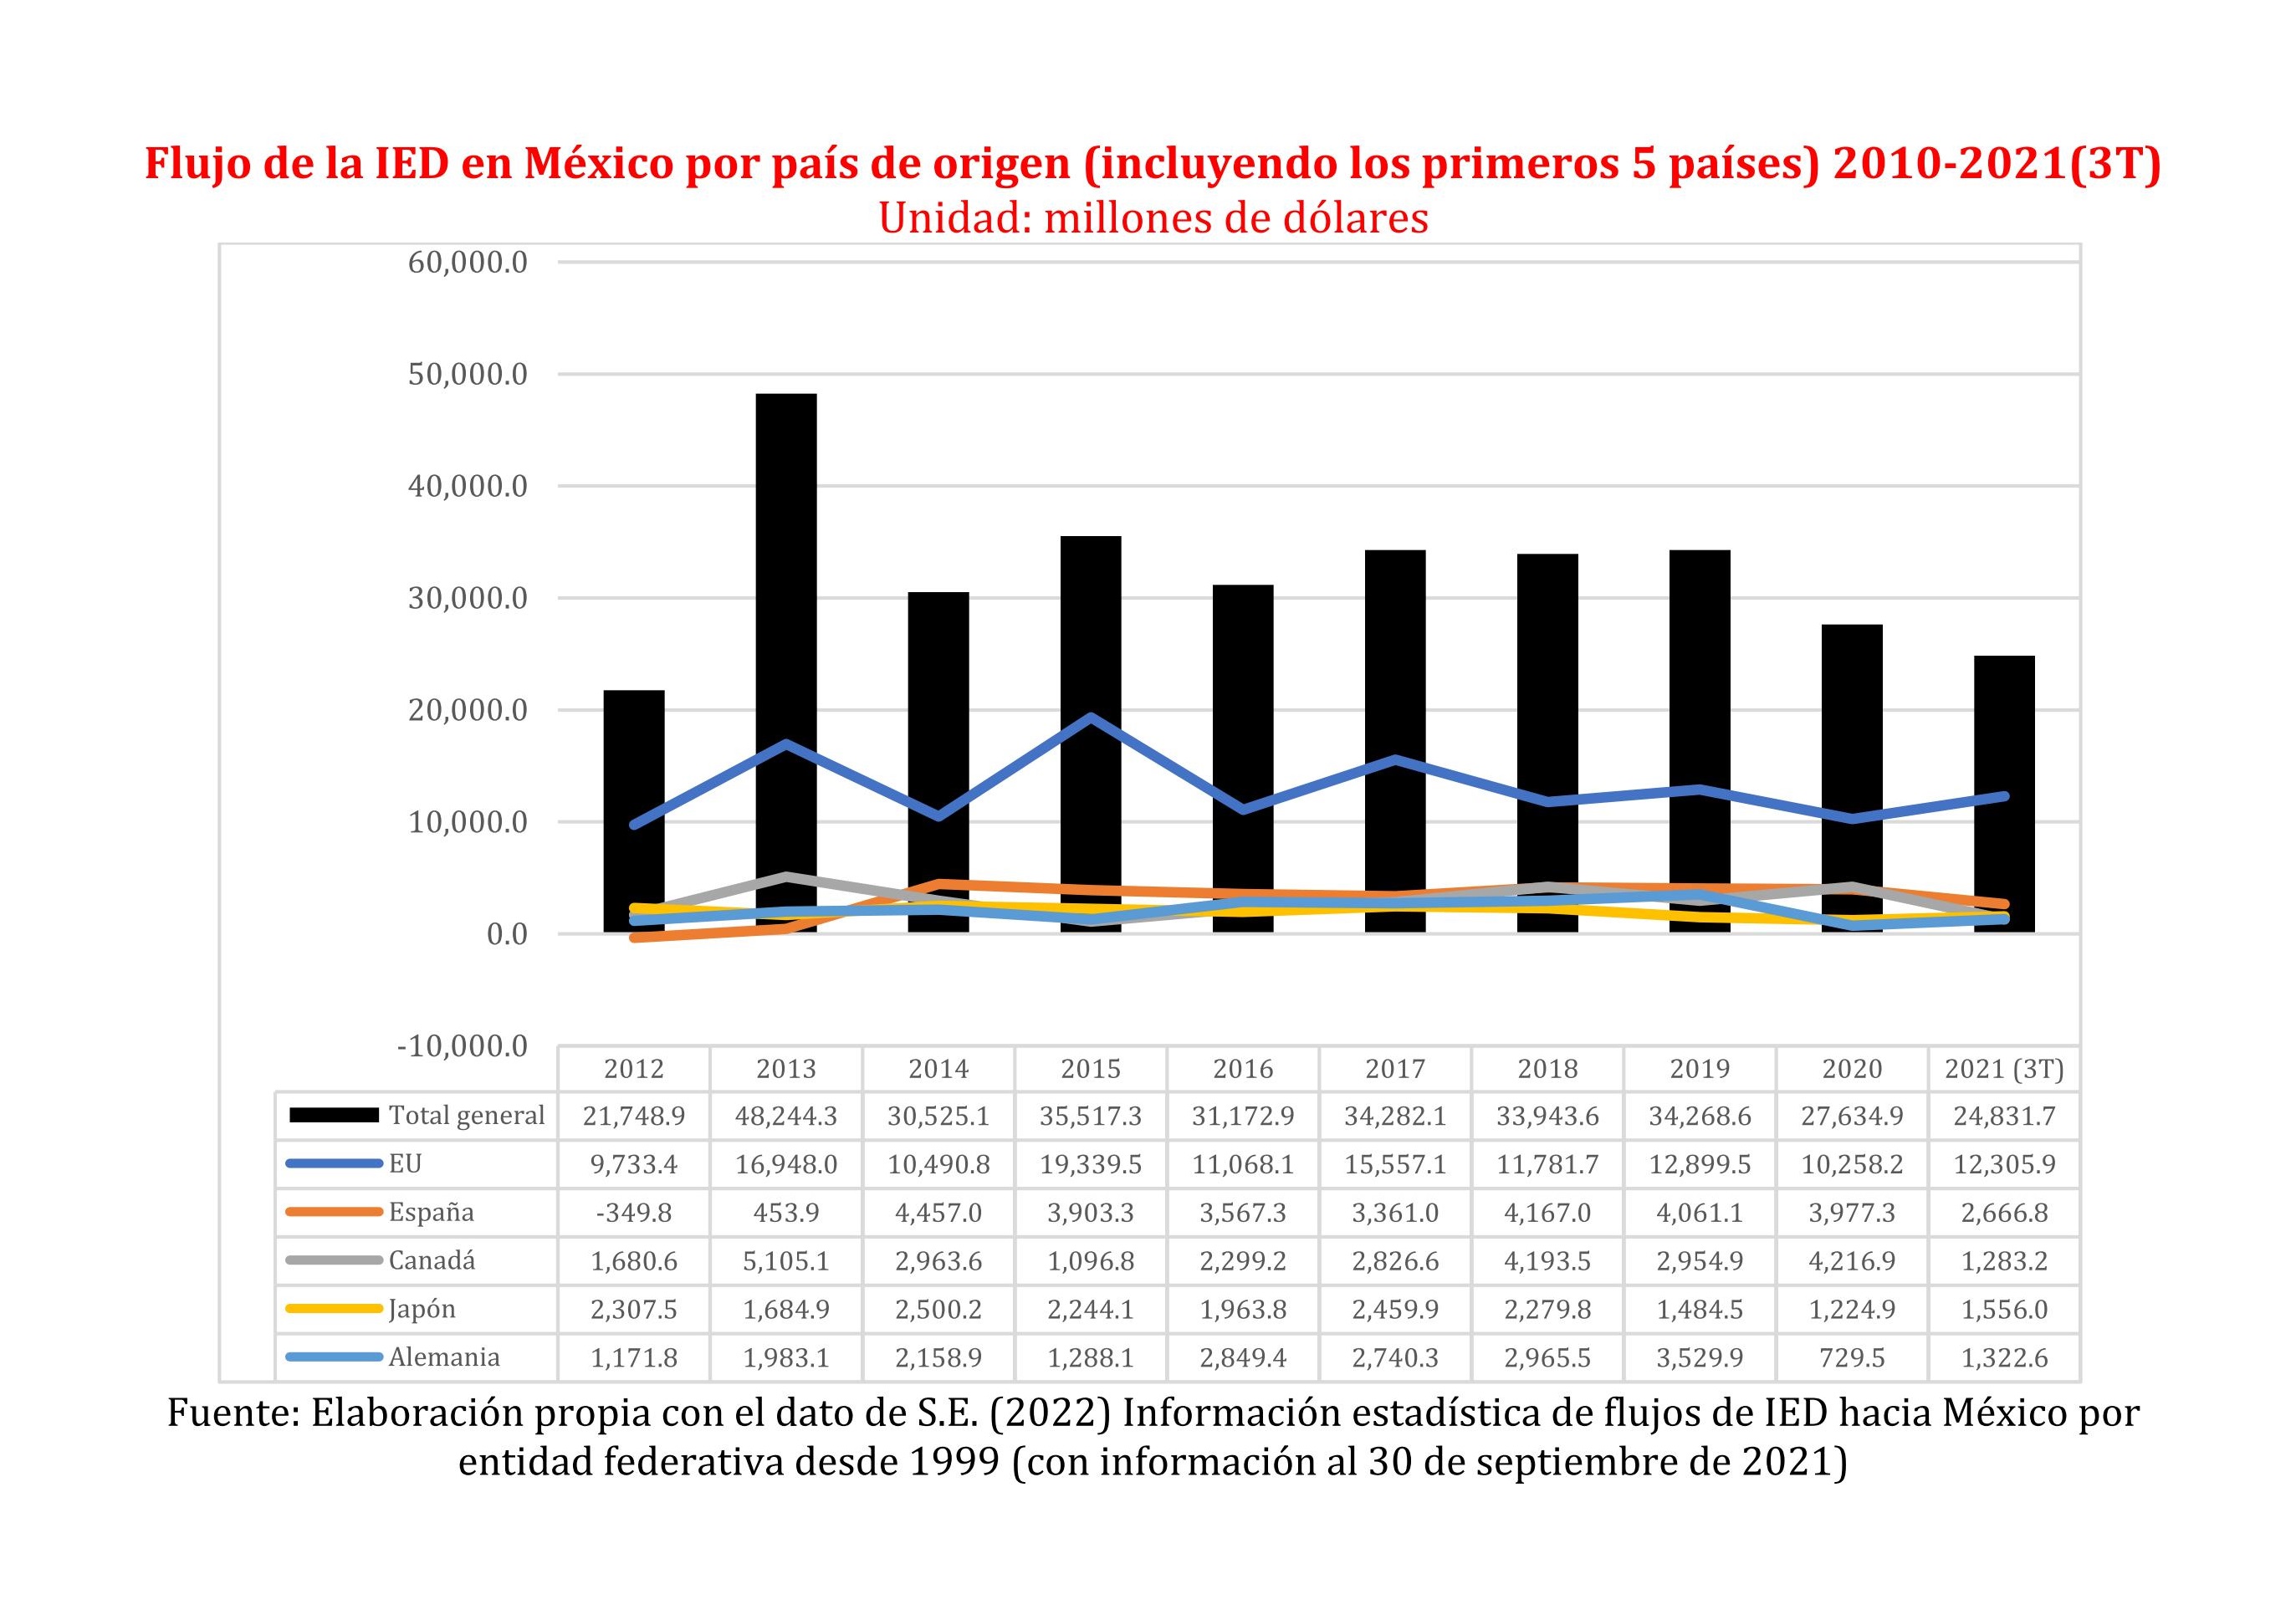 Flujo de la IED en México por país de origen 